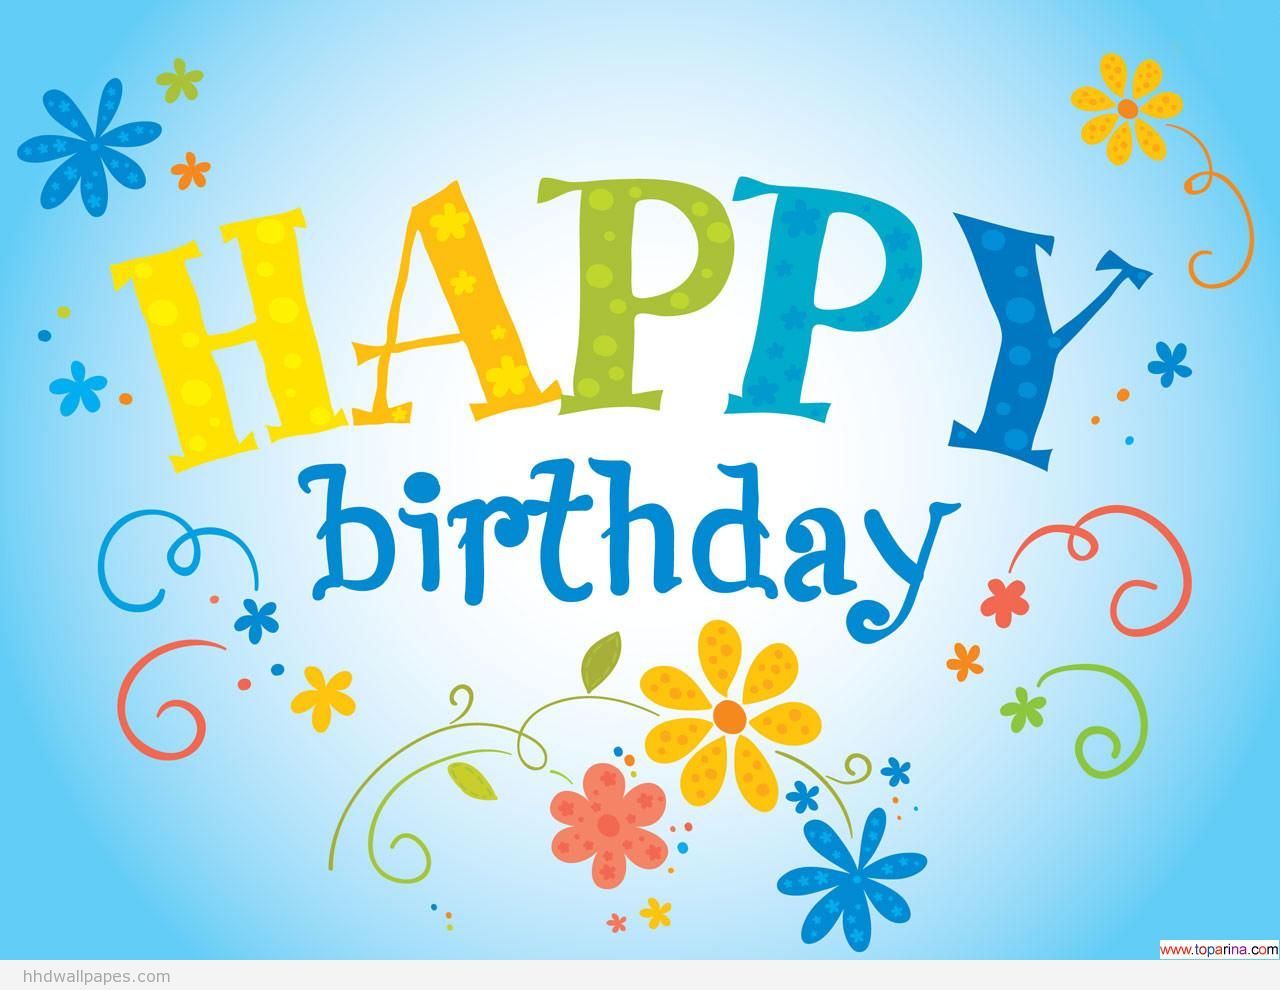 gudu ngiseng blog: Birthday Wishes Picture 2014